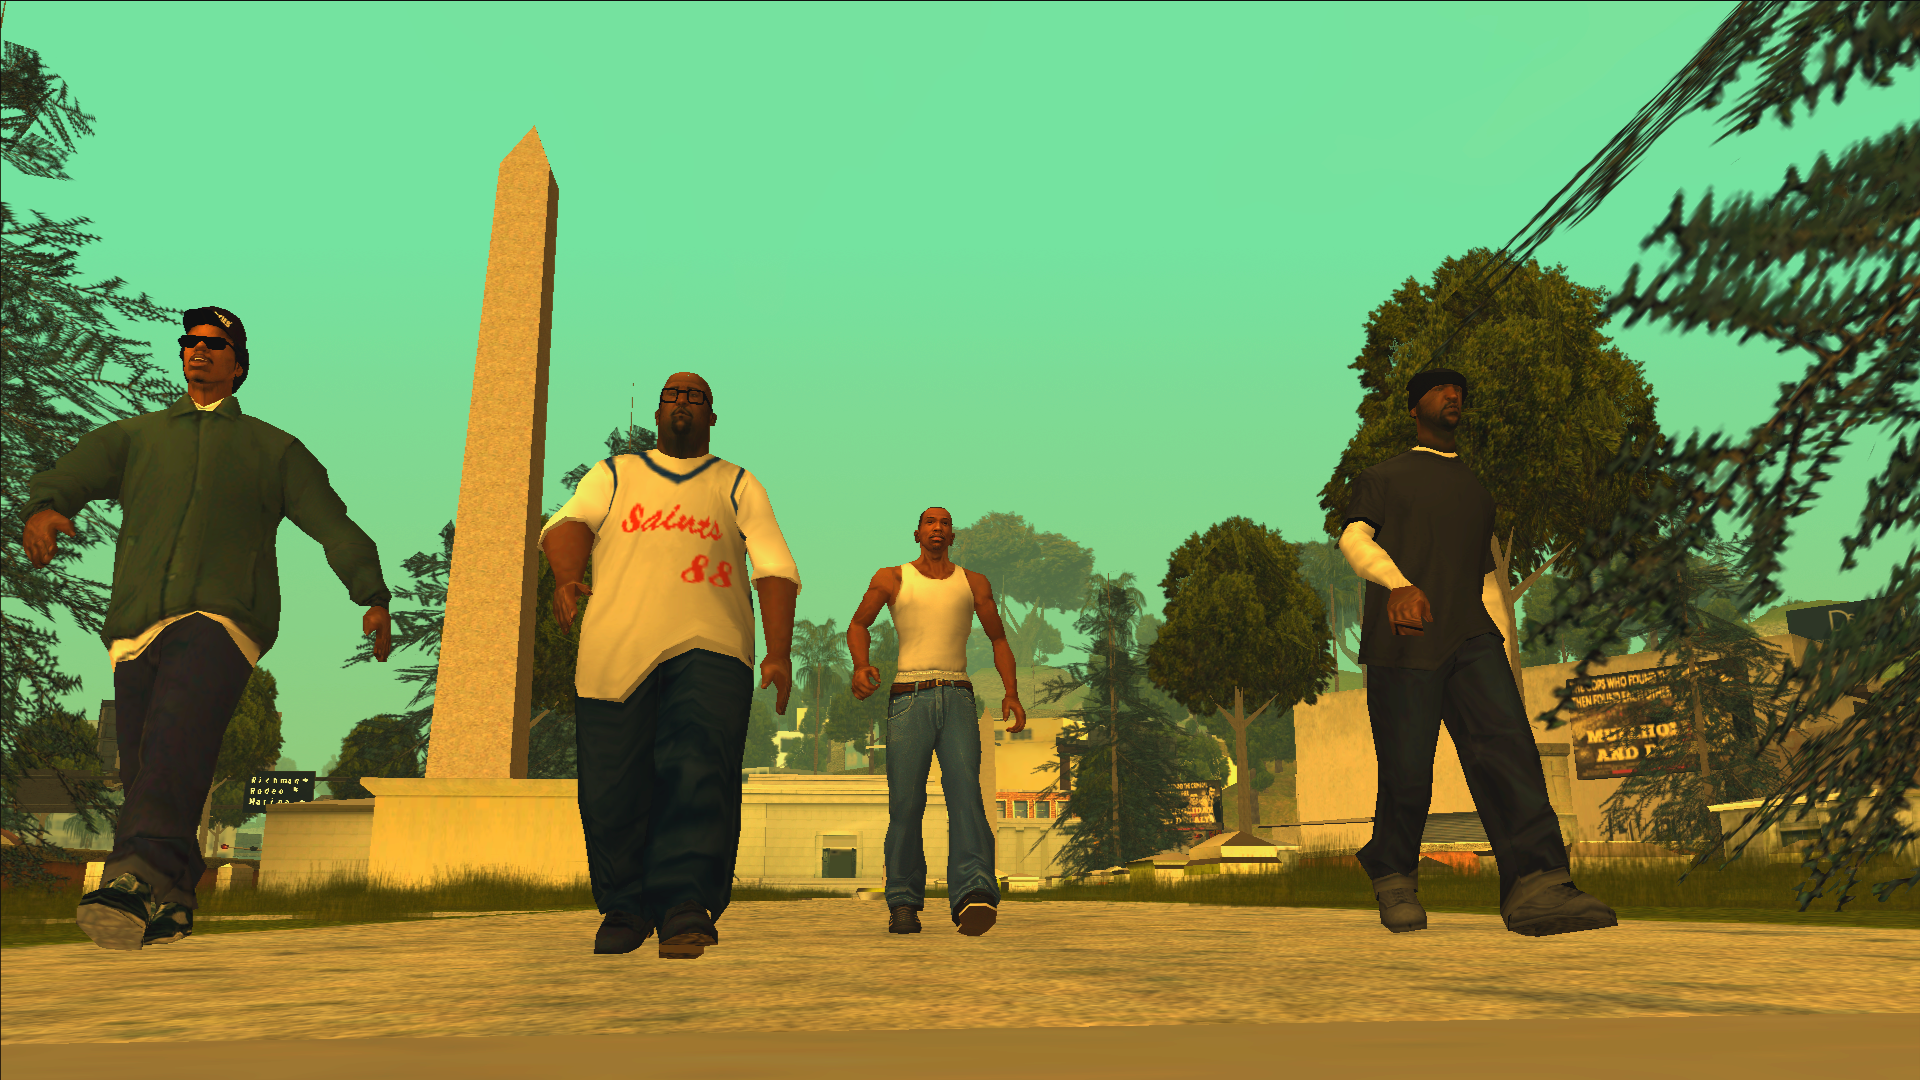 Grand Theft Auto San Andreas Definitive Edition file - ModDB